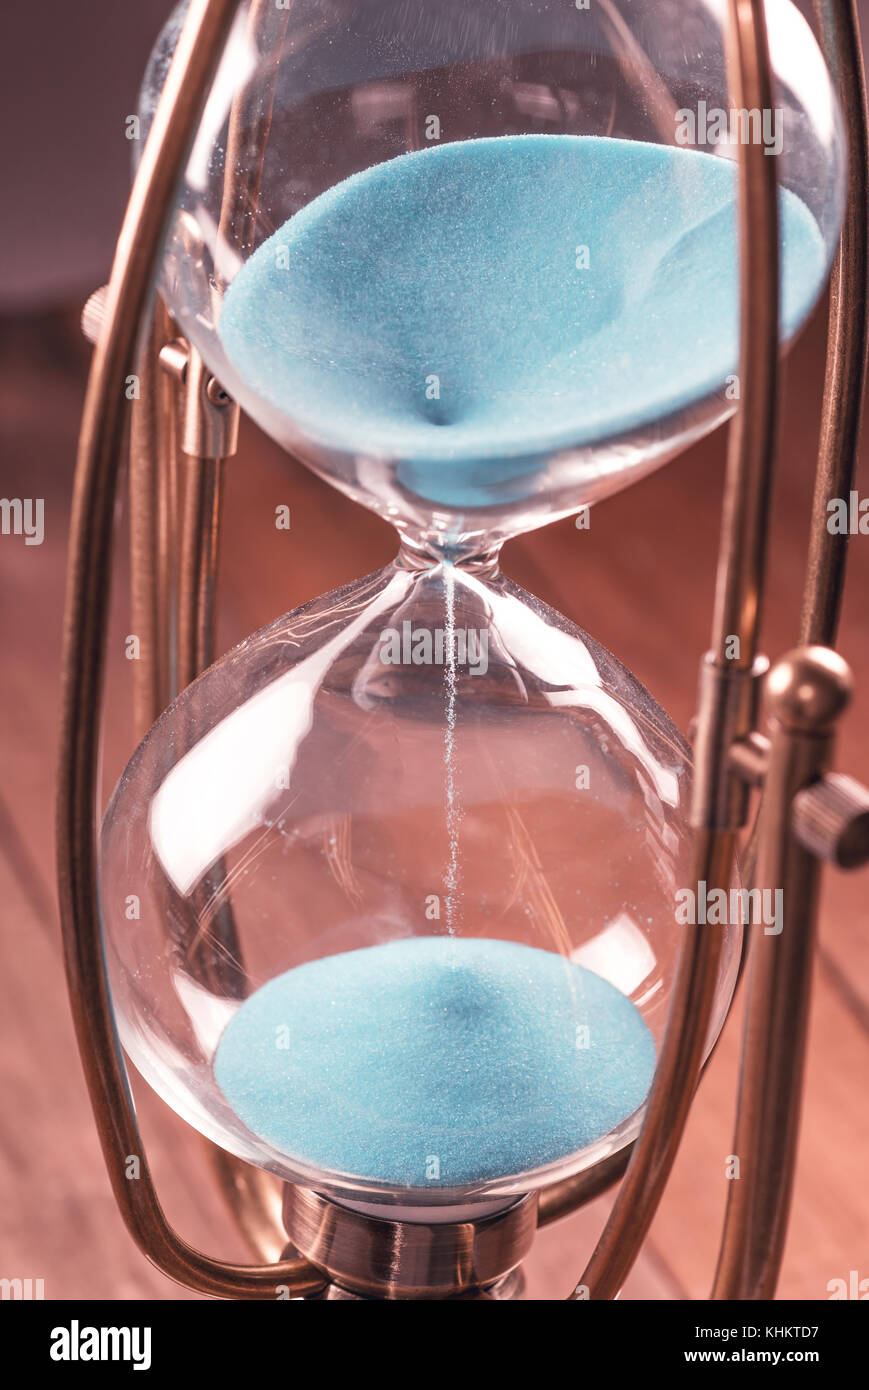 Clessidra con sabbia in colore blu e corpo in vetro bloccato dal telaio metallico. Foto Stock